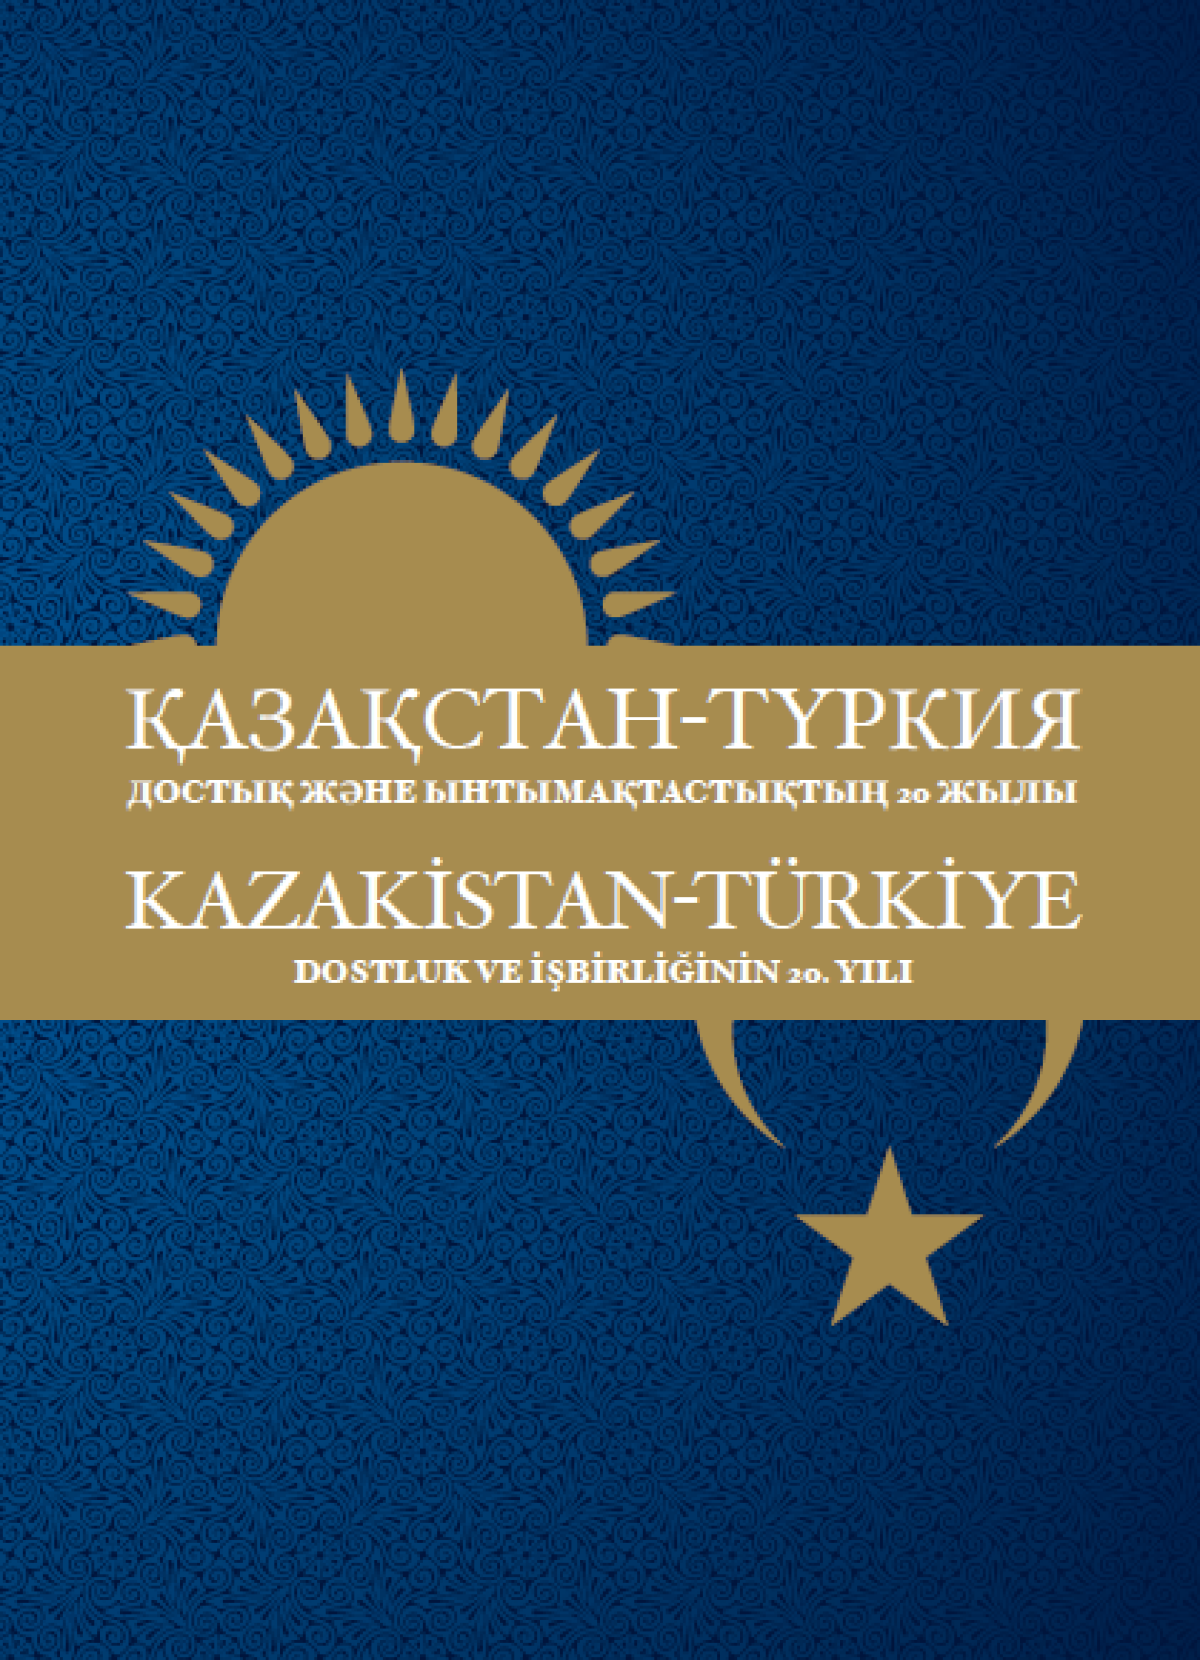 Kazakistan-Türkiye Dostluk ile İşbirliğinin 20 Yılı